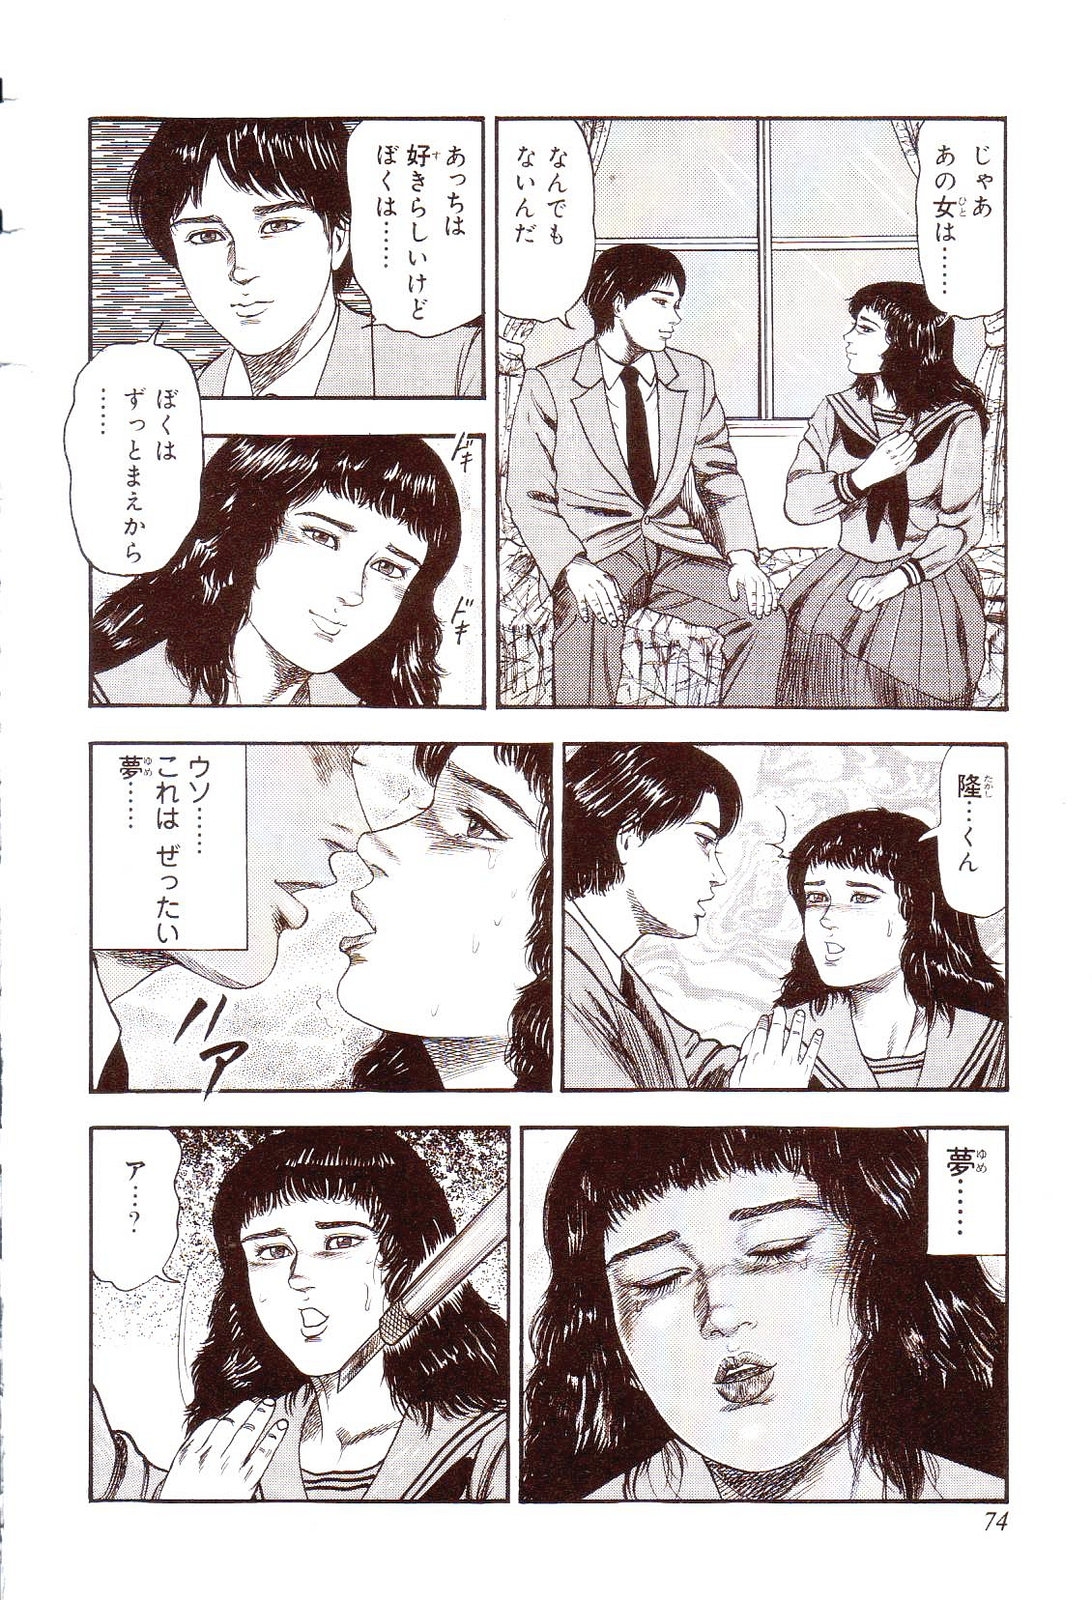 [Sanjou Tomomi] Inu ni Naritai -kyoufu manga shugyoku sakuhinshiyuu- 78